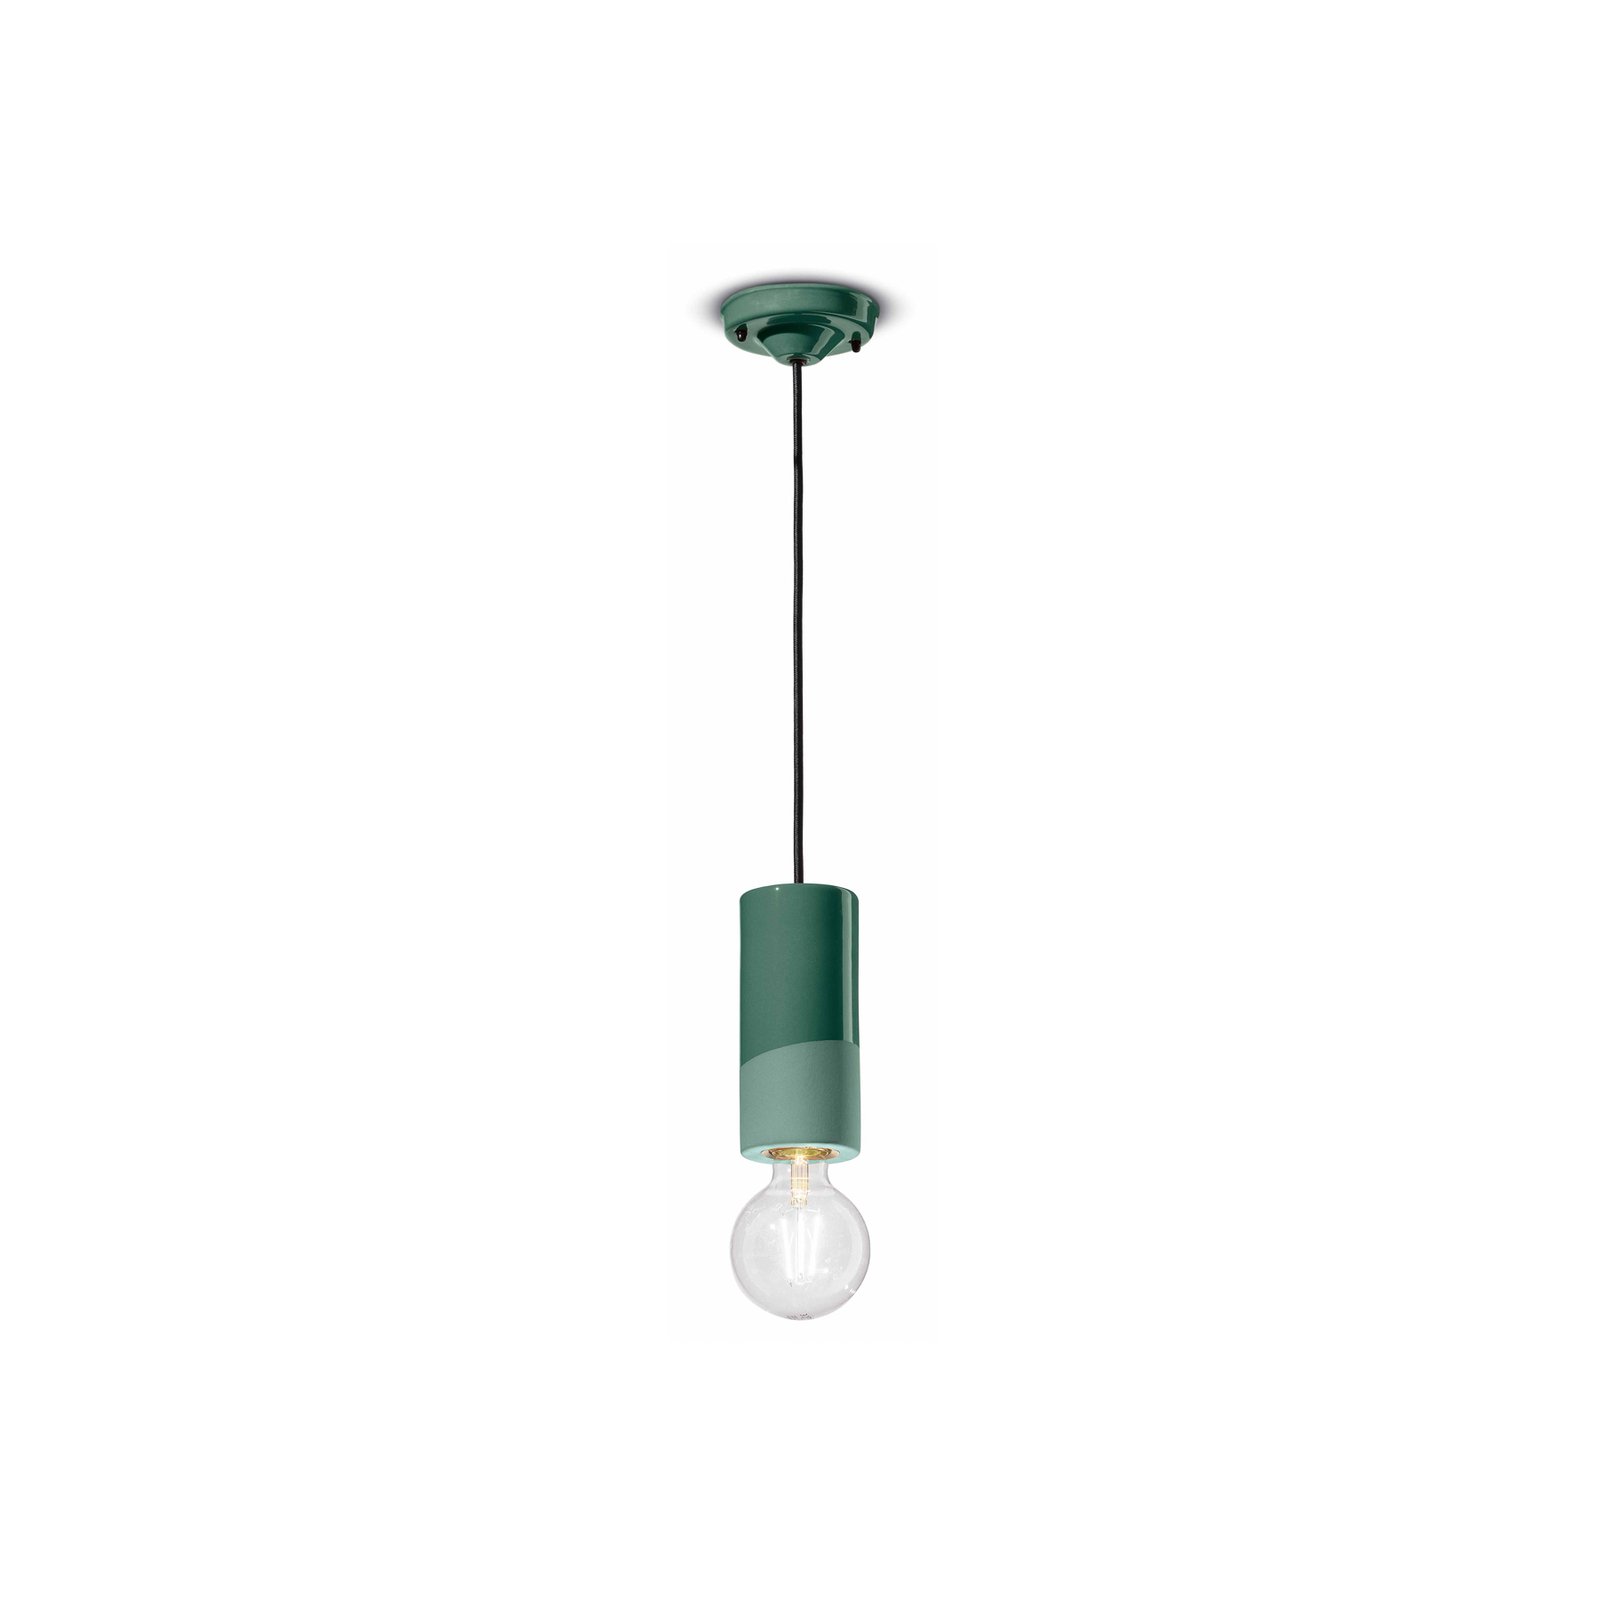 Lampada a sospensione PI, cilindrica, Ø 8 cm verde